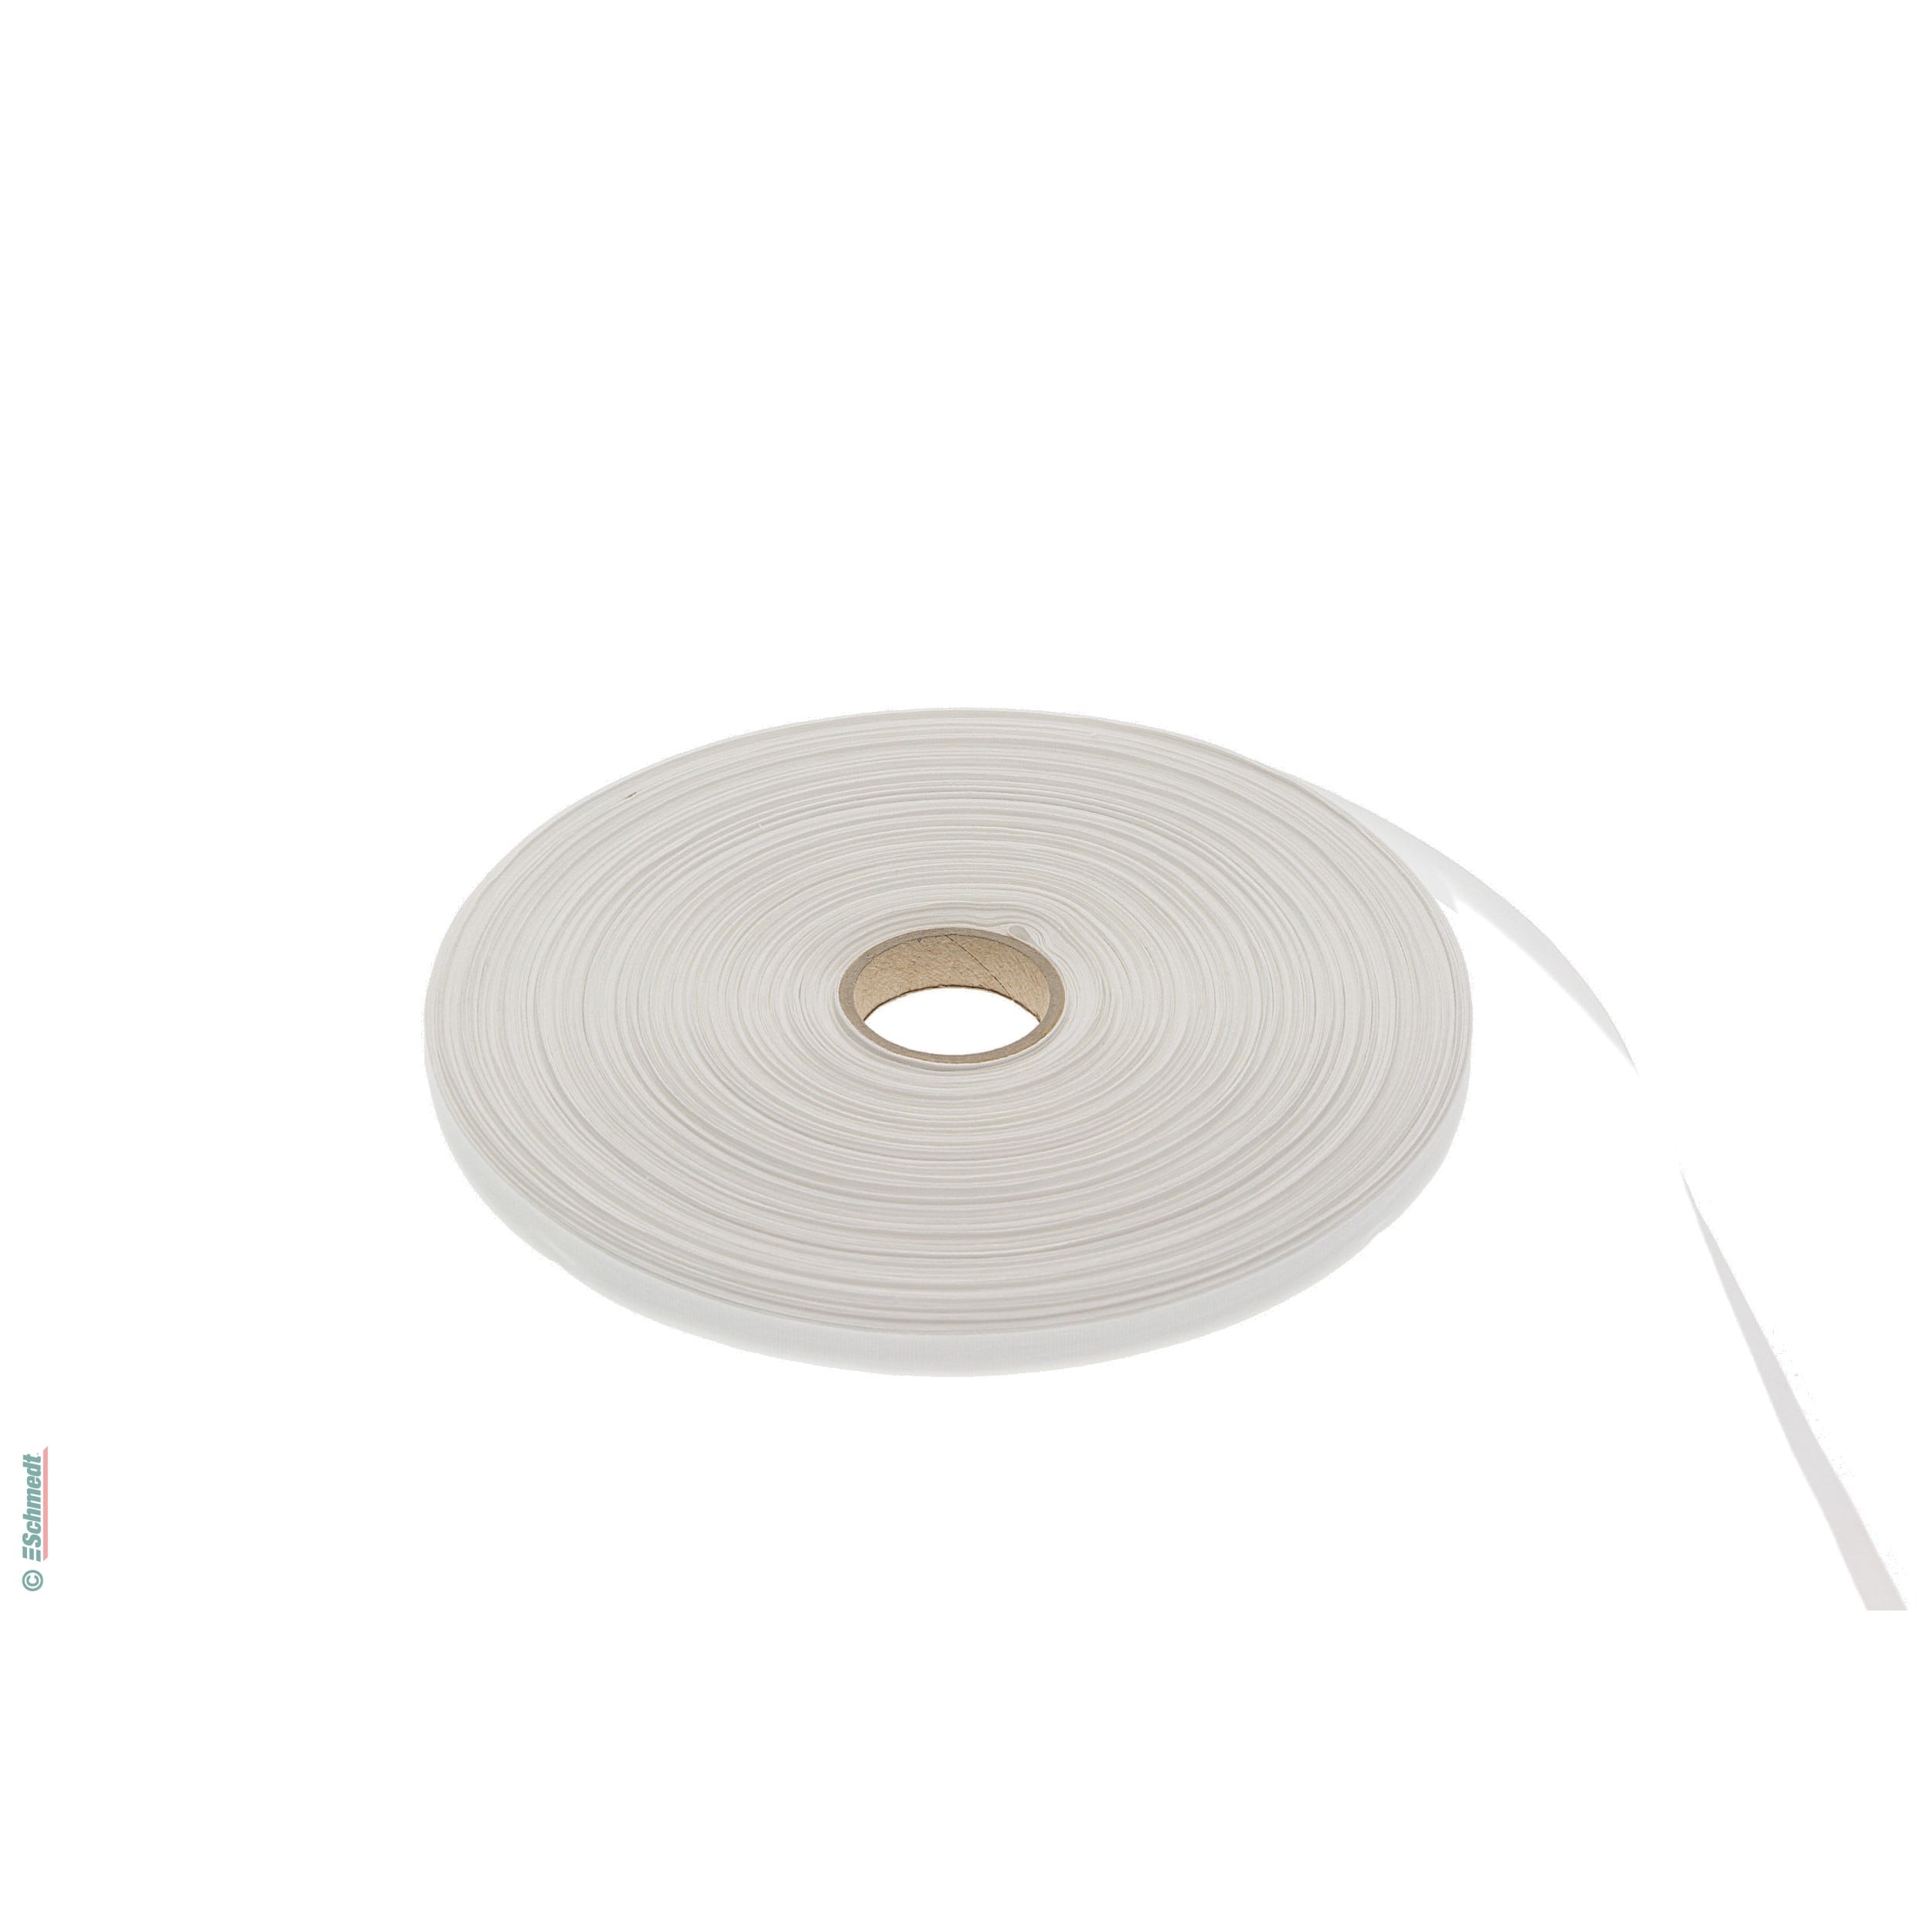 Cinta para carpetas - cinta fina de hilo - Anchura (en mm) 10 - Color blanco - para cerrar carpetas y libros...